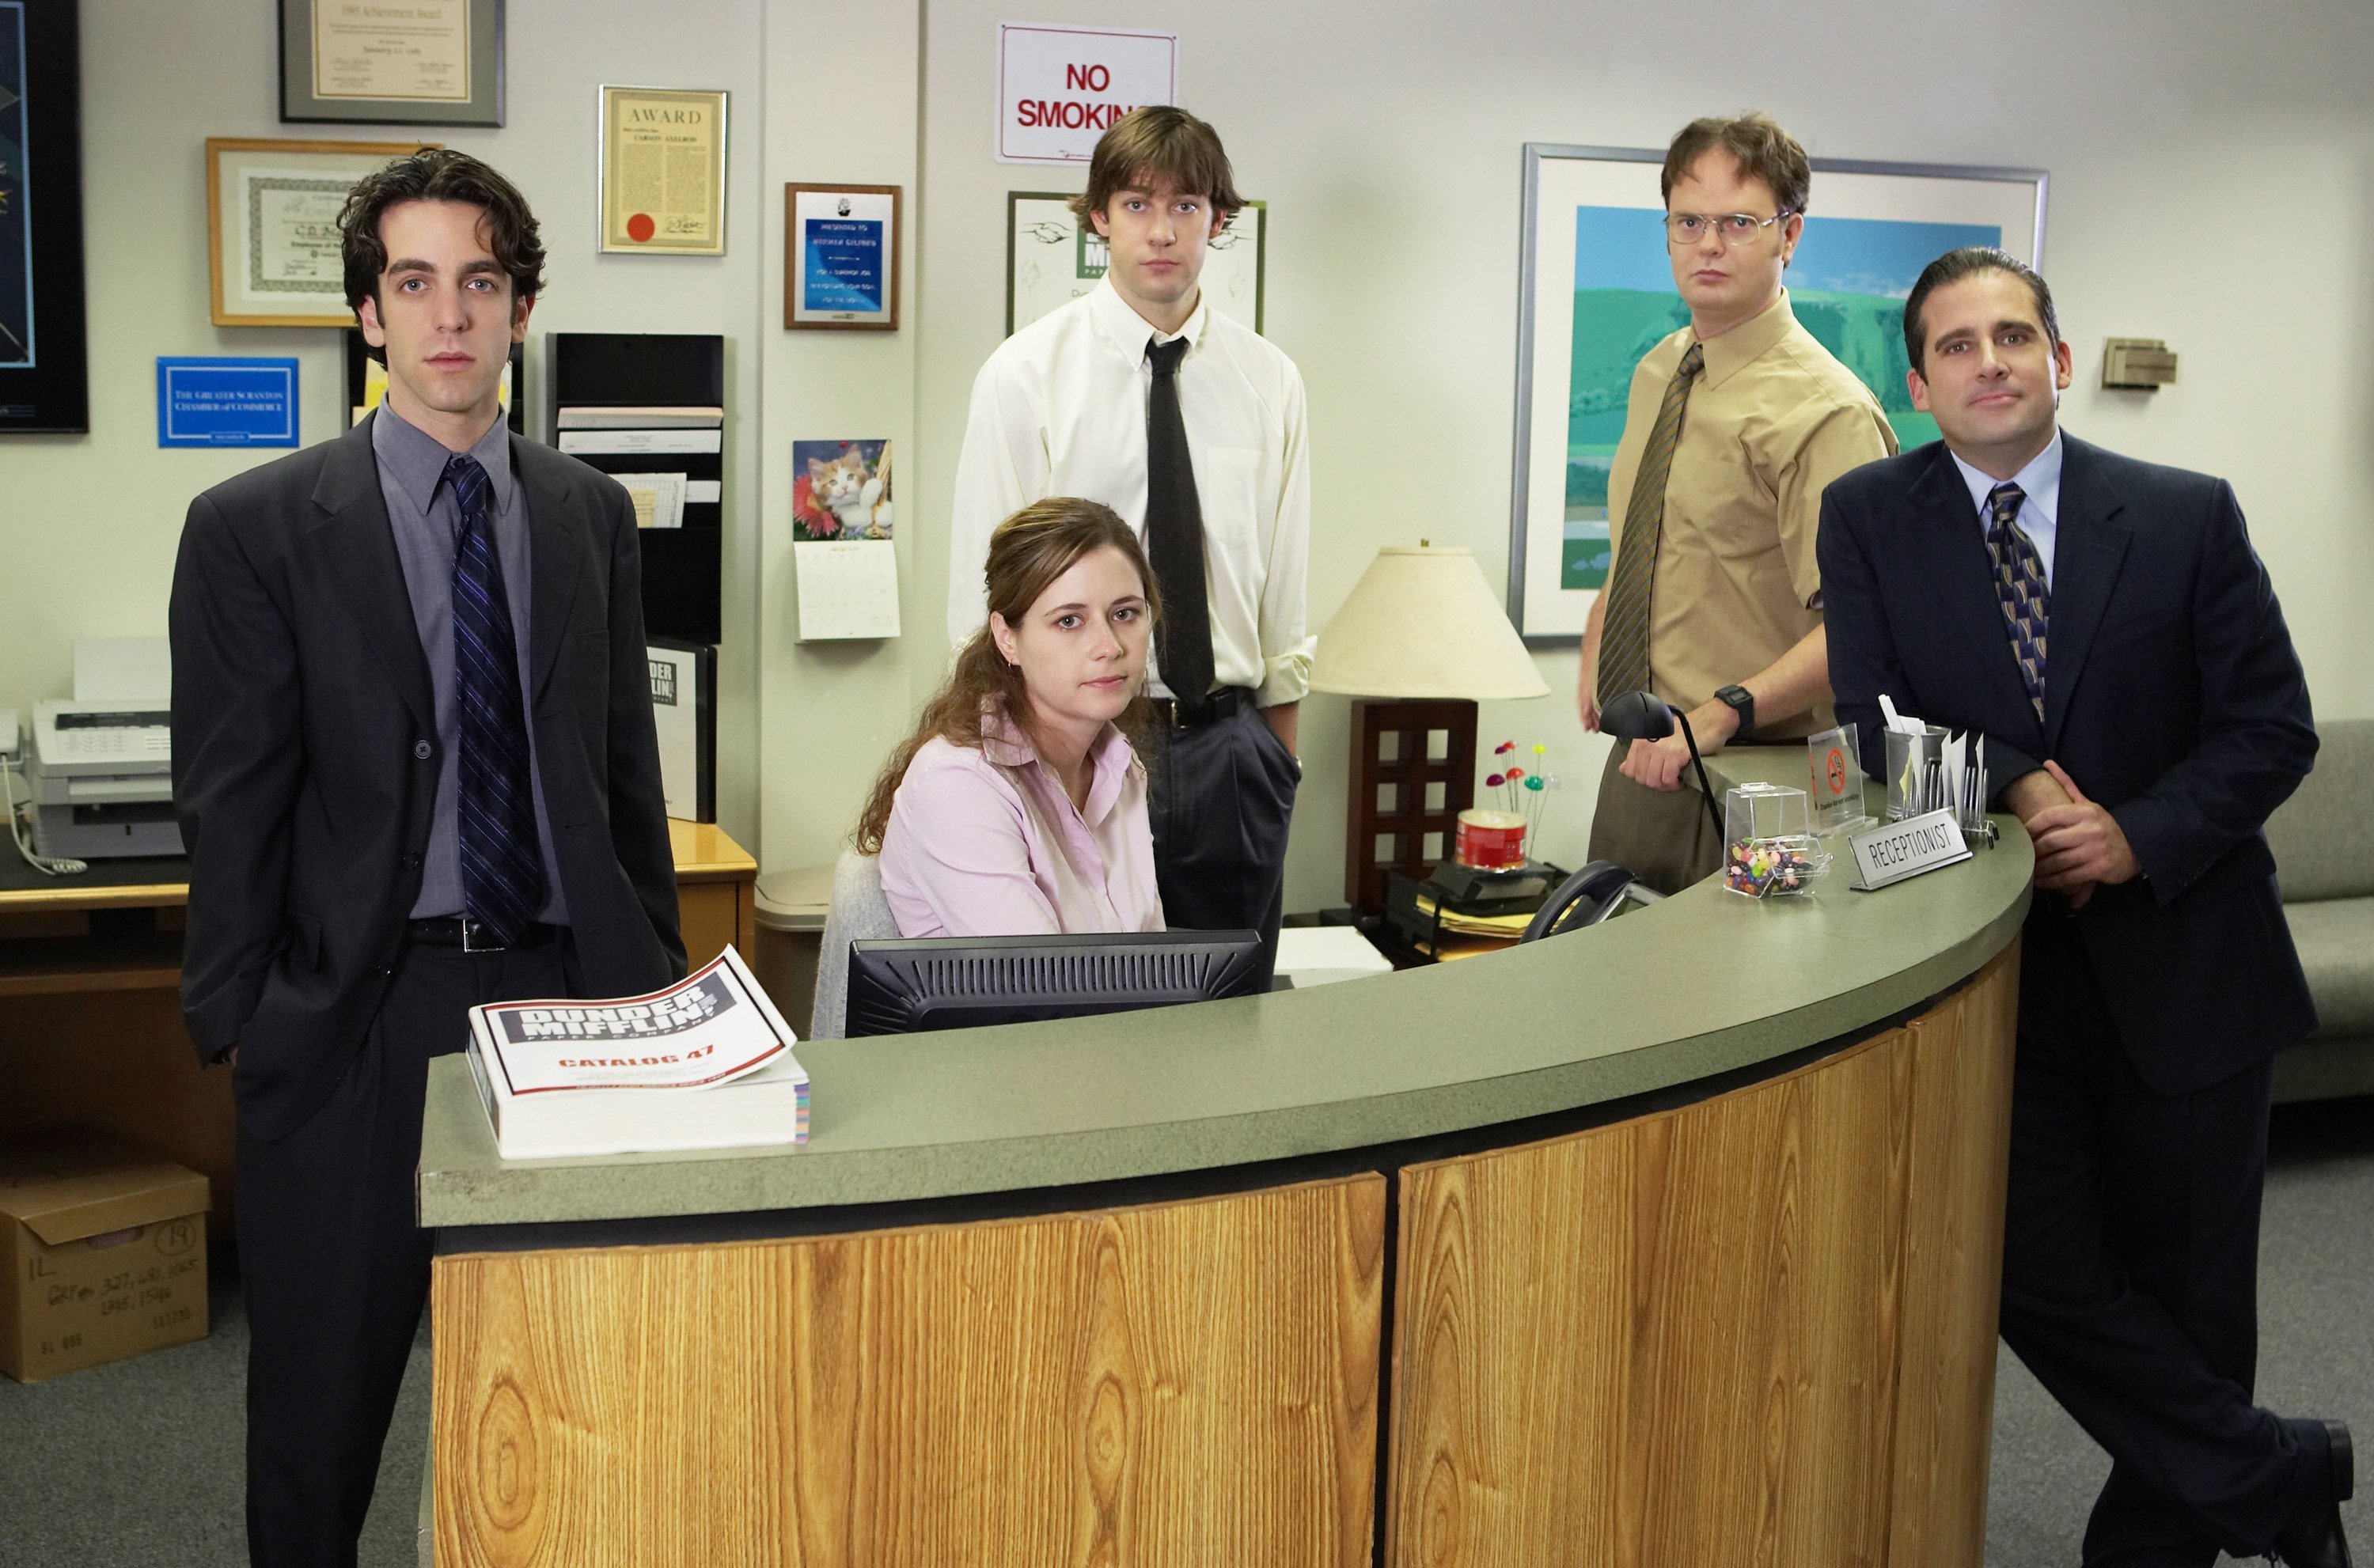 'The Office' cast posing at the reception desk, including BJ Novak as Ryan Howard, Jenna Fischer as Pam Beesly, John Krasinski as Jim Halpert, Rainn Wilson as Dwight Schrute, and Steve Carell as Michael Scott